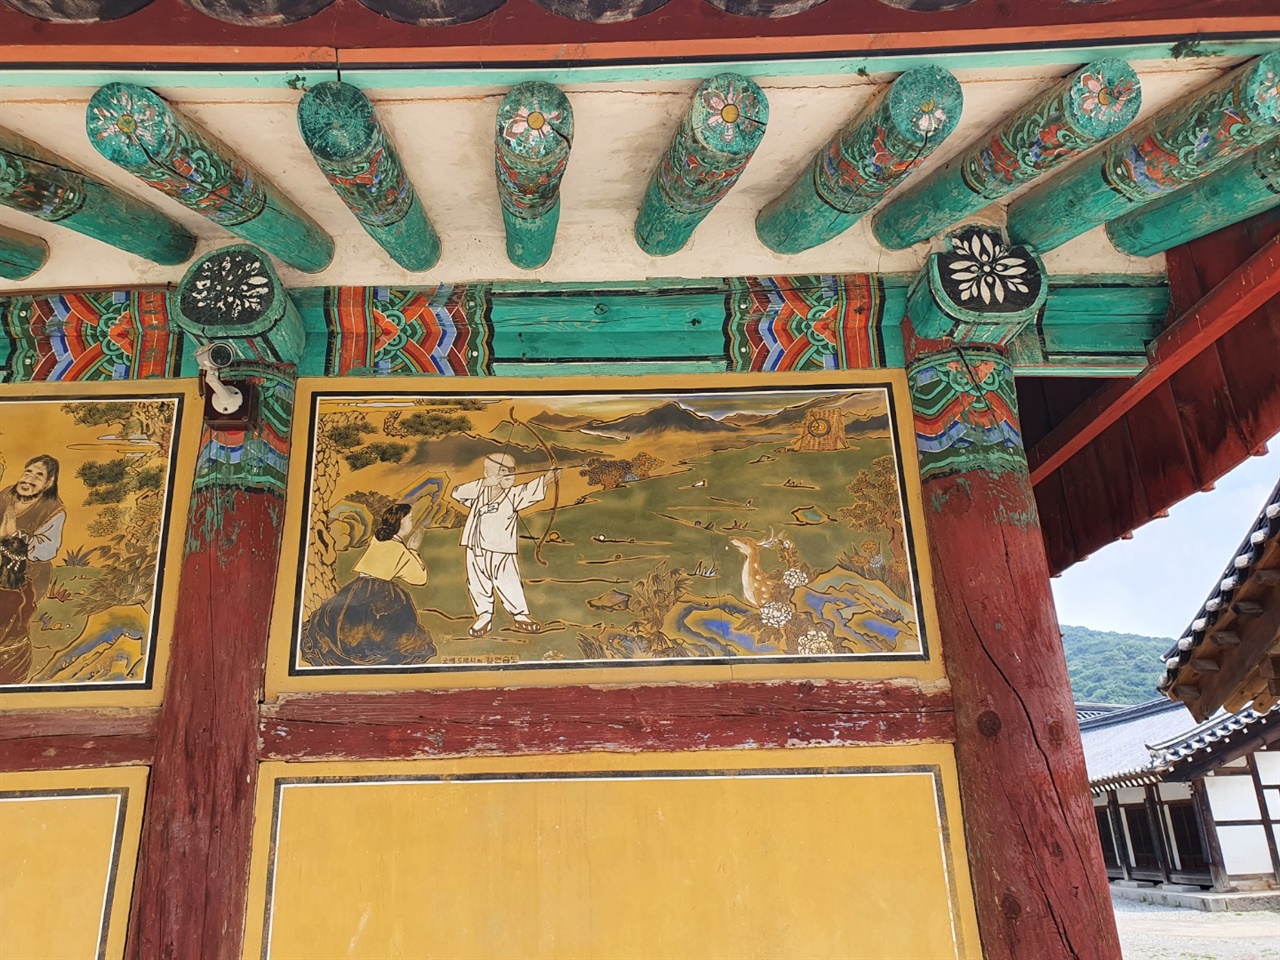 한국 역사상 가장 흥미진진한 인물인 궁예는 이곳 안성 칠장사에서 유년 시절을 보냈다. 안성, 포천 일대에는 아직도 그 당시 만들어진 미륵불이 꽤나 남아있다.